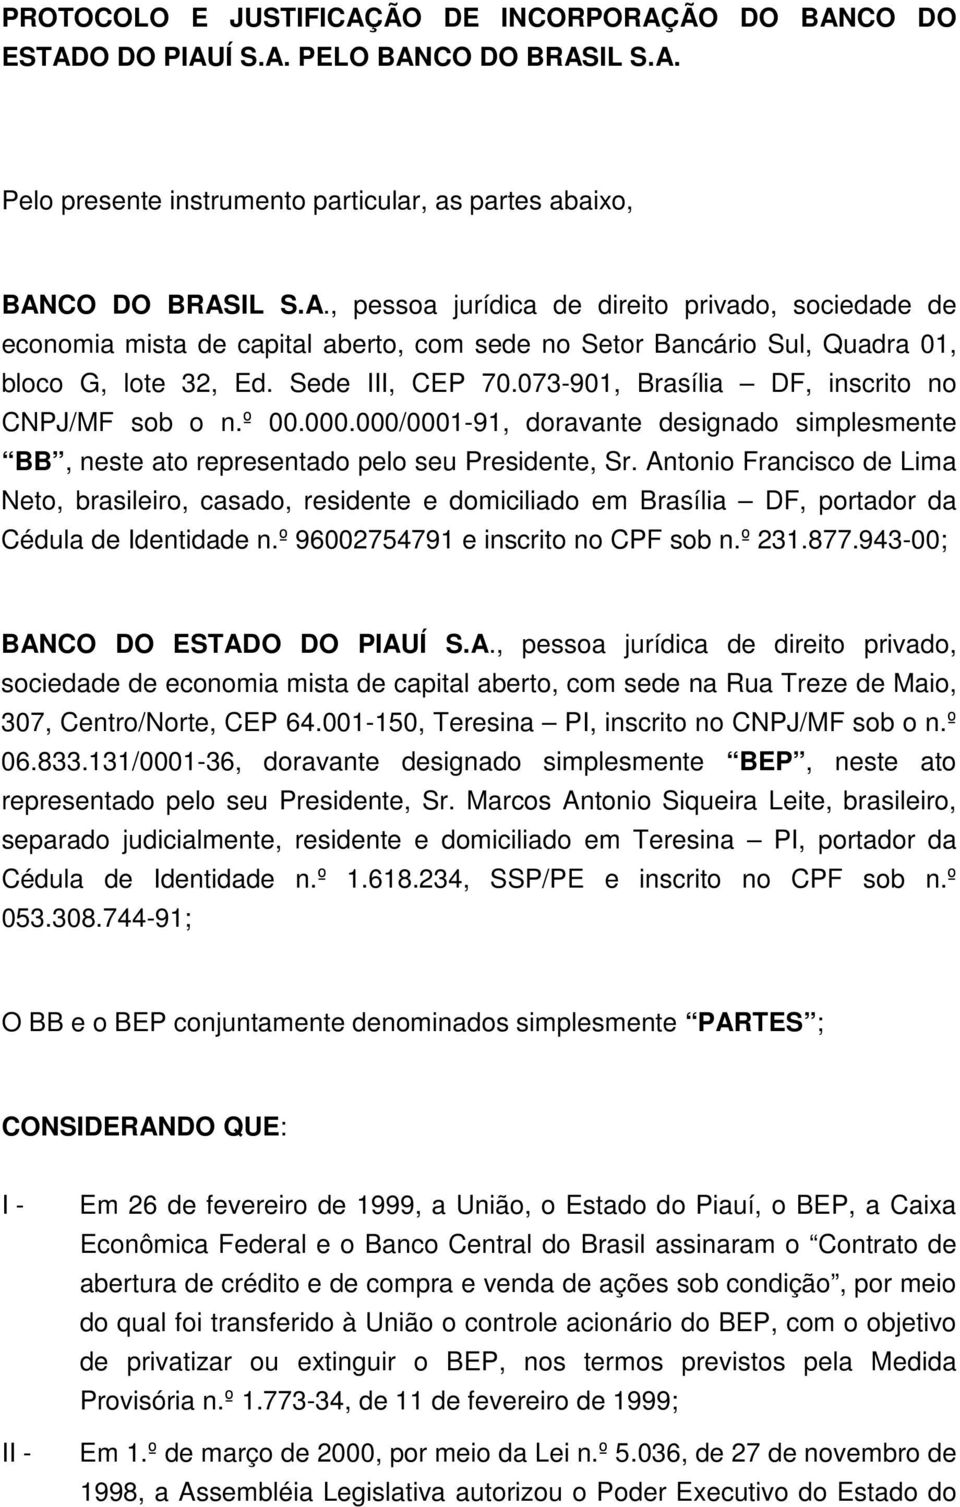 Antonio Francisco de Lima Neto, brasileiro, casado, residente e domiciliado em Brasília DF, portador da Cédula de Identidade n.º 96002754791 e inscrito no CPF sob n.º 231.877.